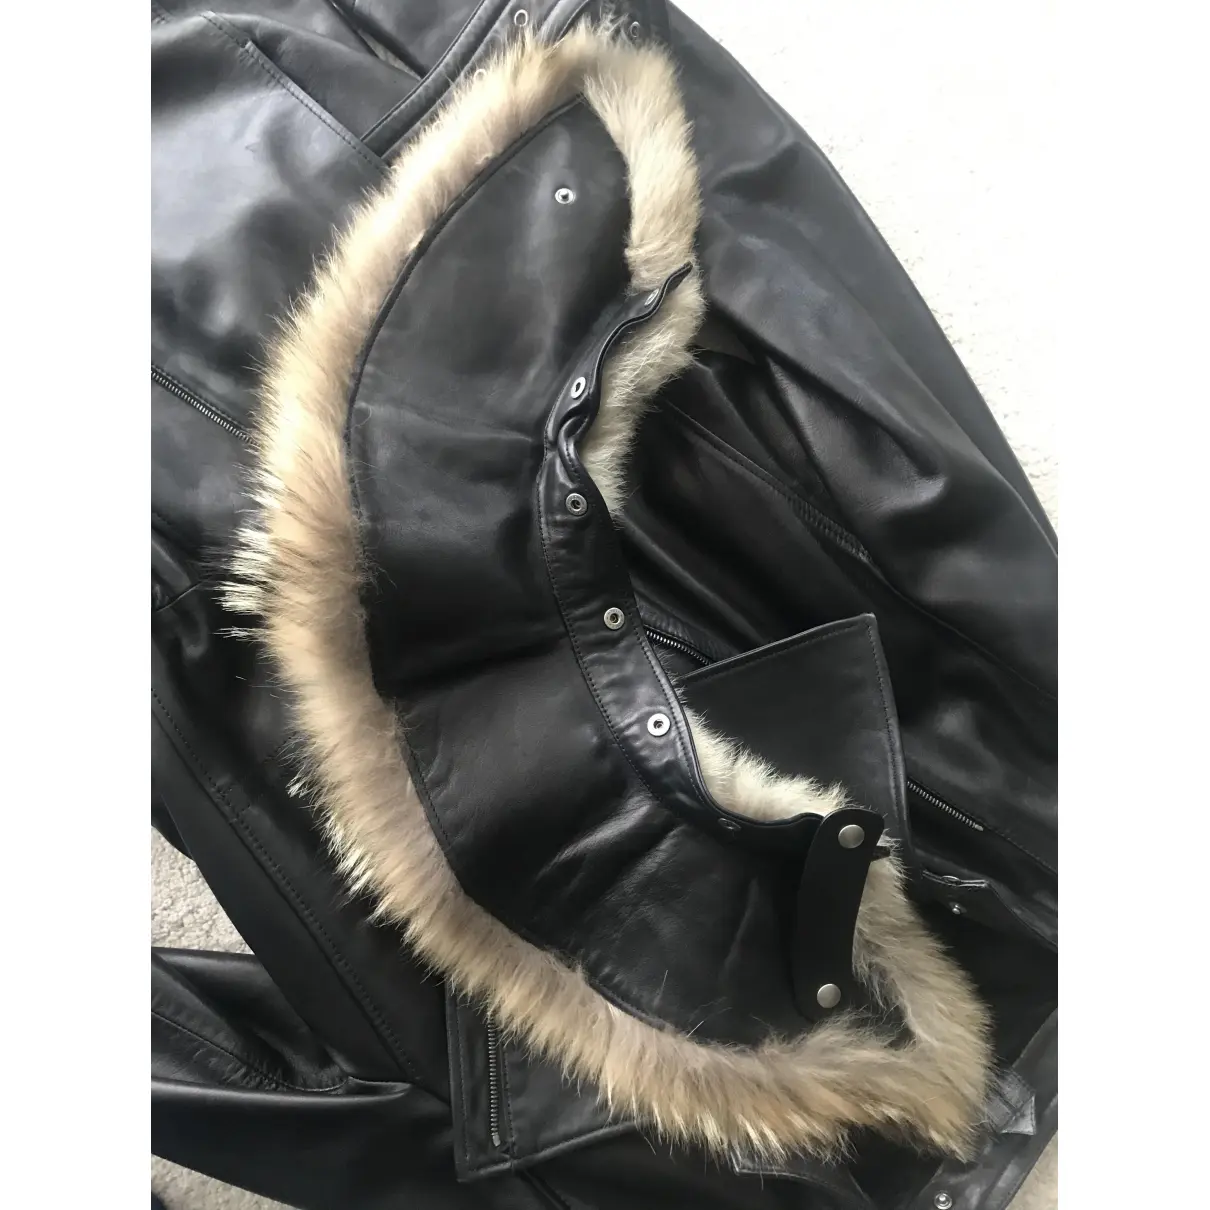 Leather coat Yves Saint Laurent - Vintage